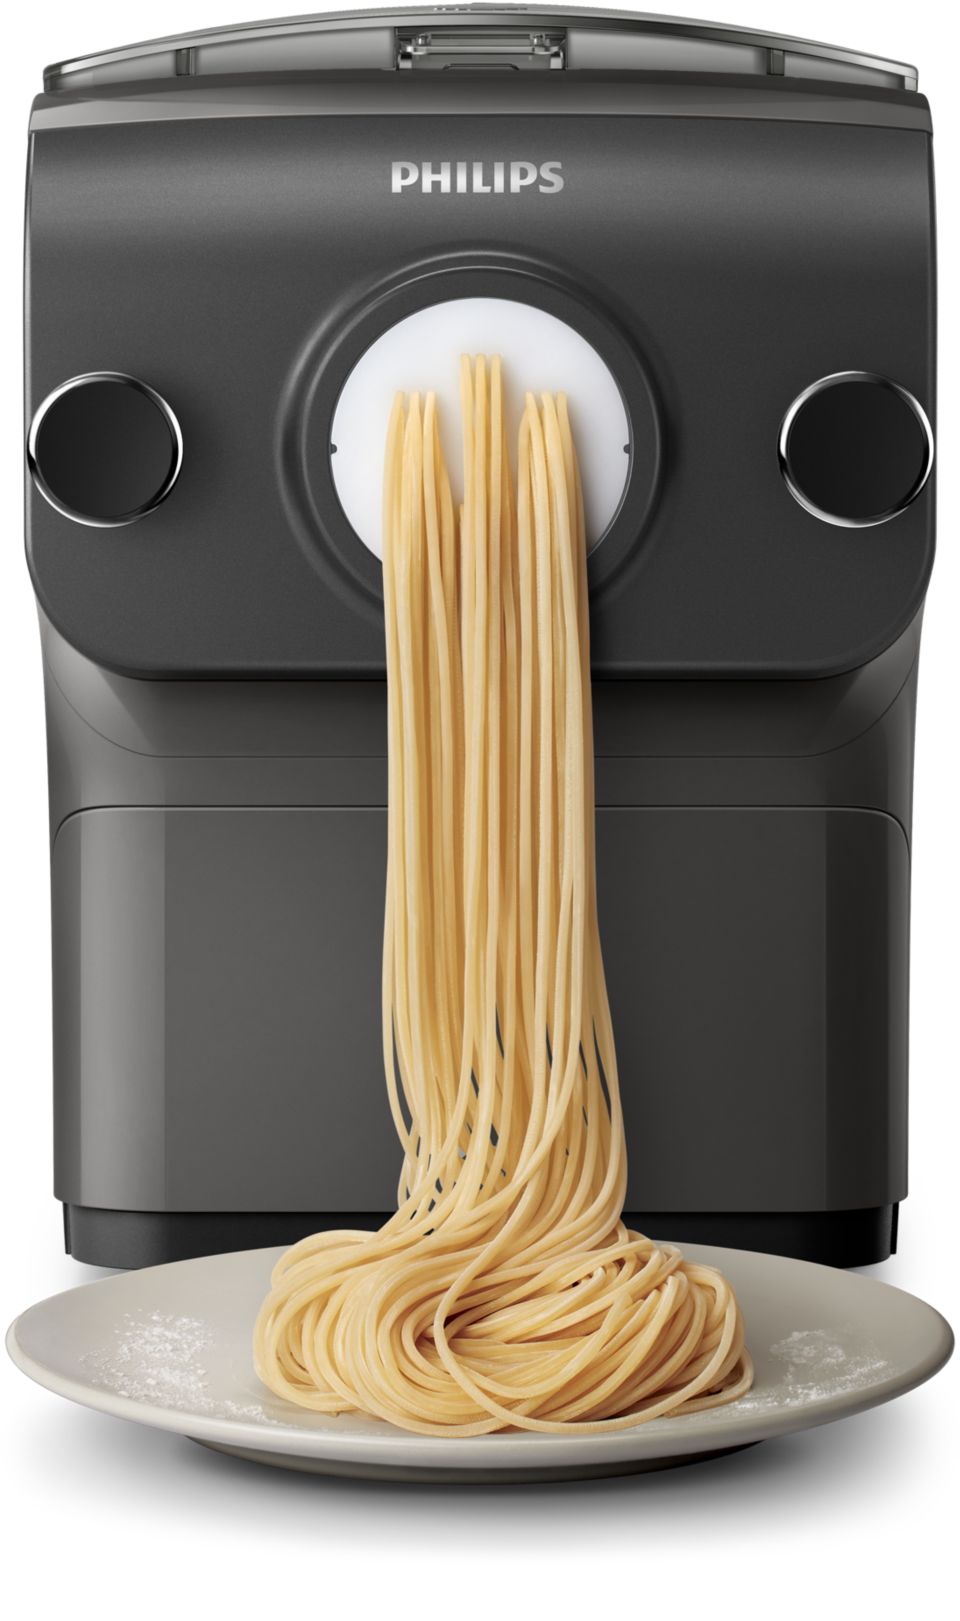 Avance Collection Pasta maker con bilancia integrata - 8 trafile HR2382/15